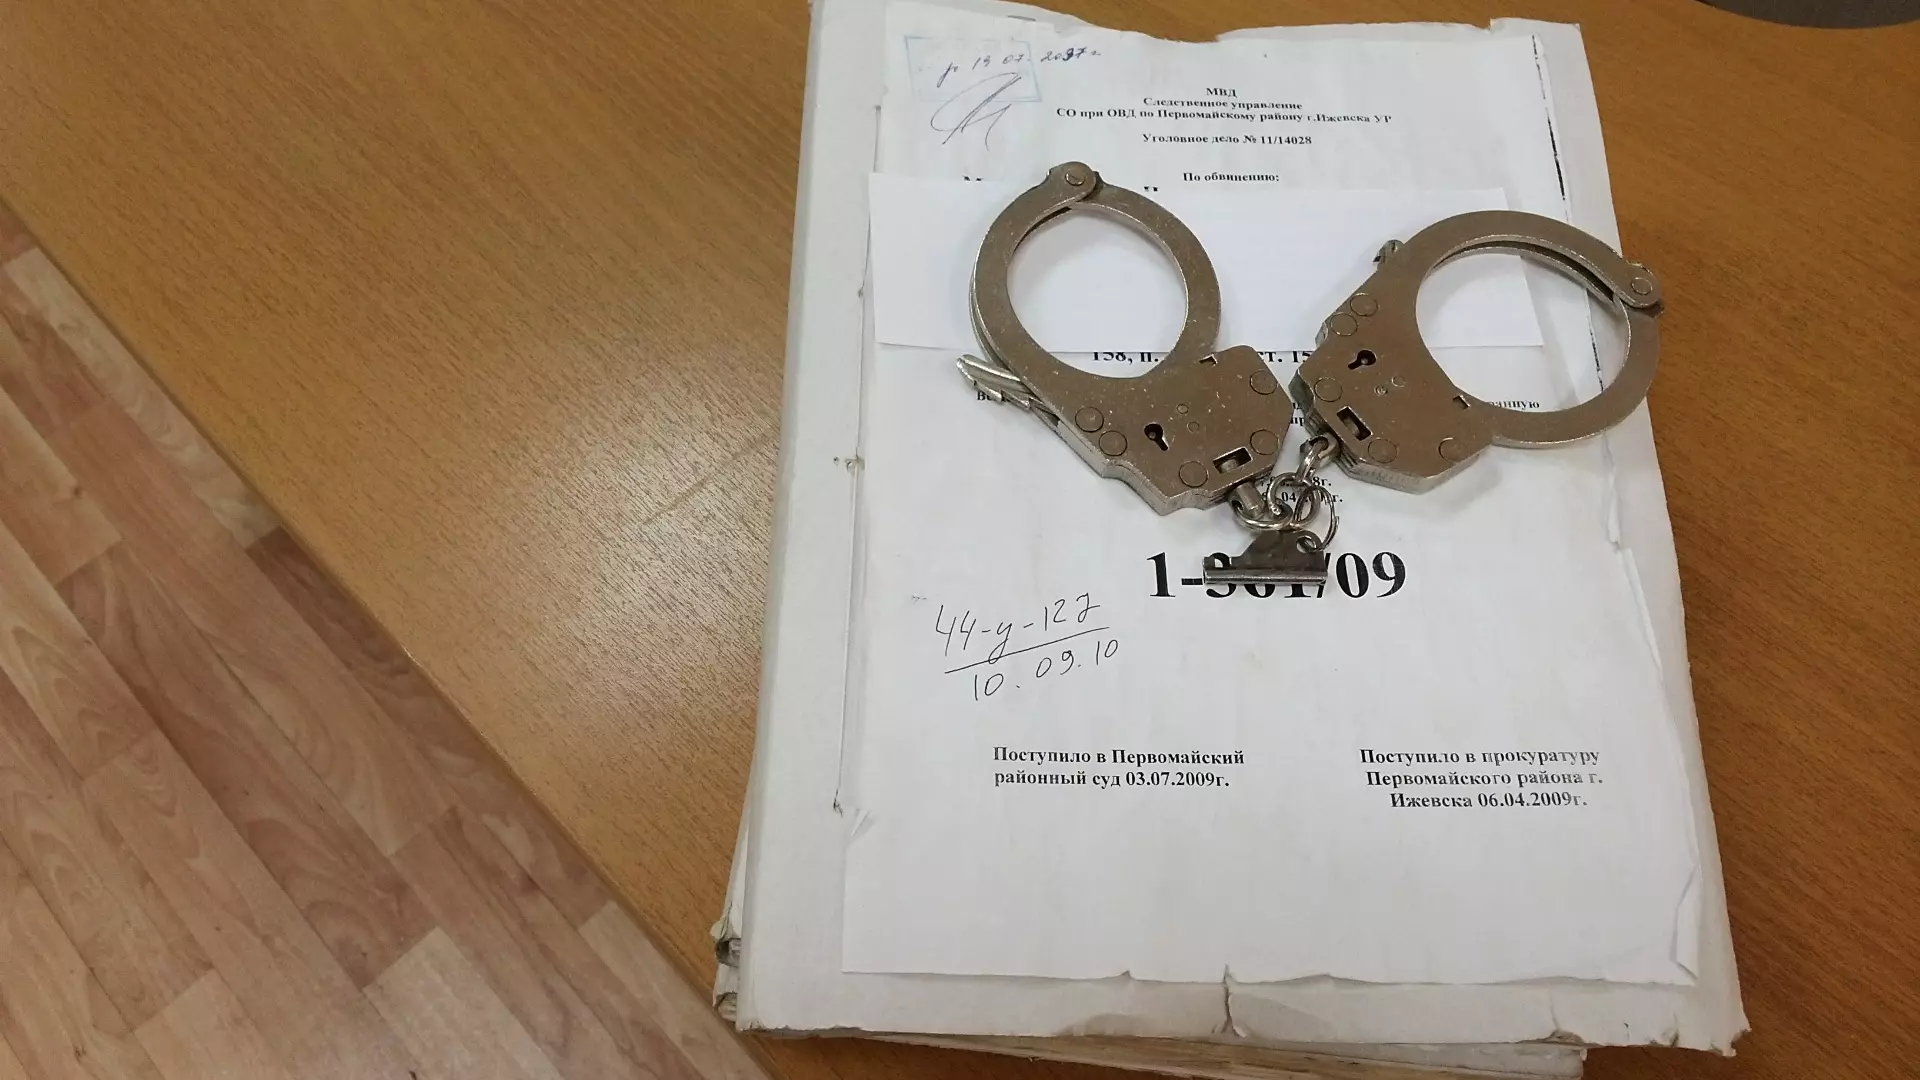 Бухгалтер техникума с помощью приписок похитила 47 млн рублей под Волгоградом